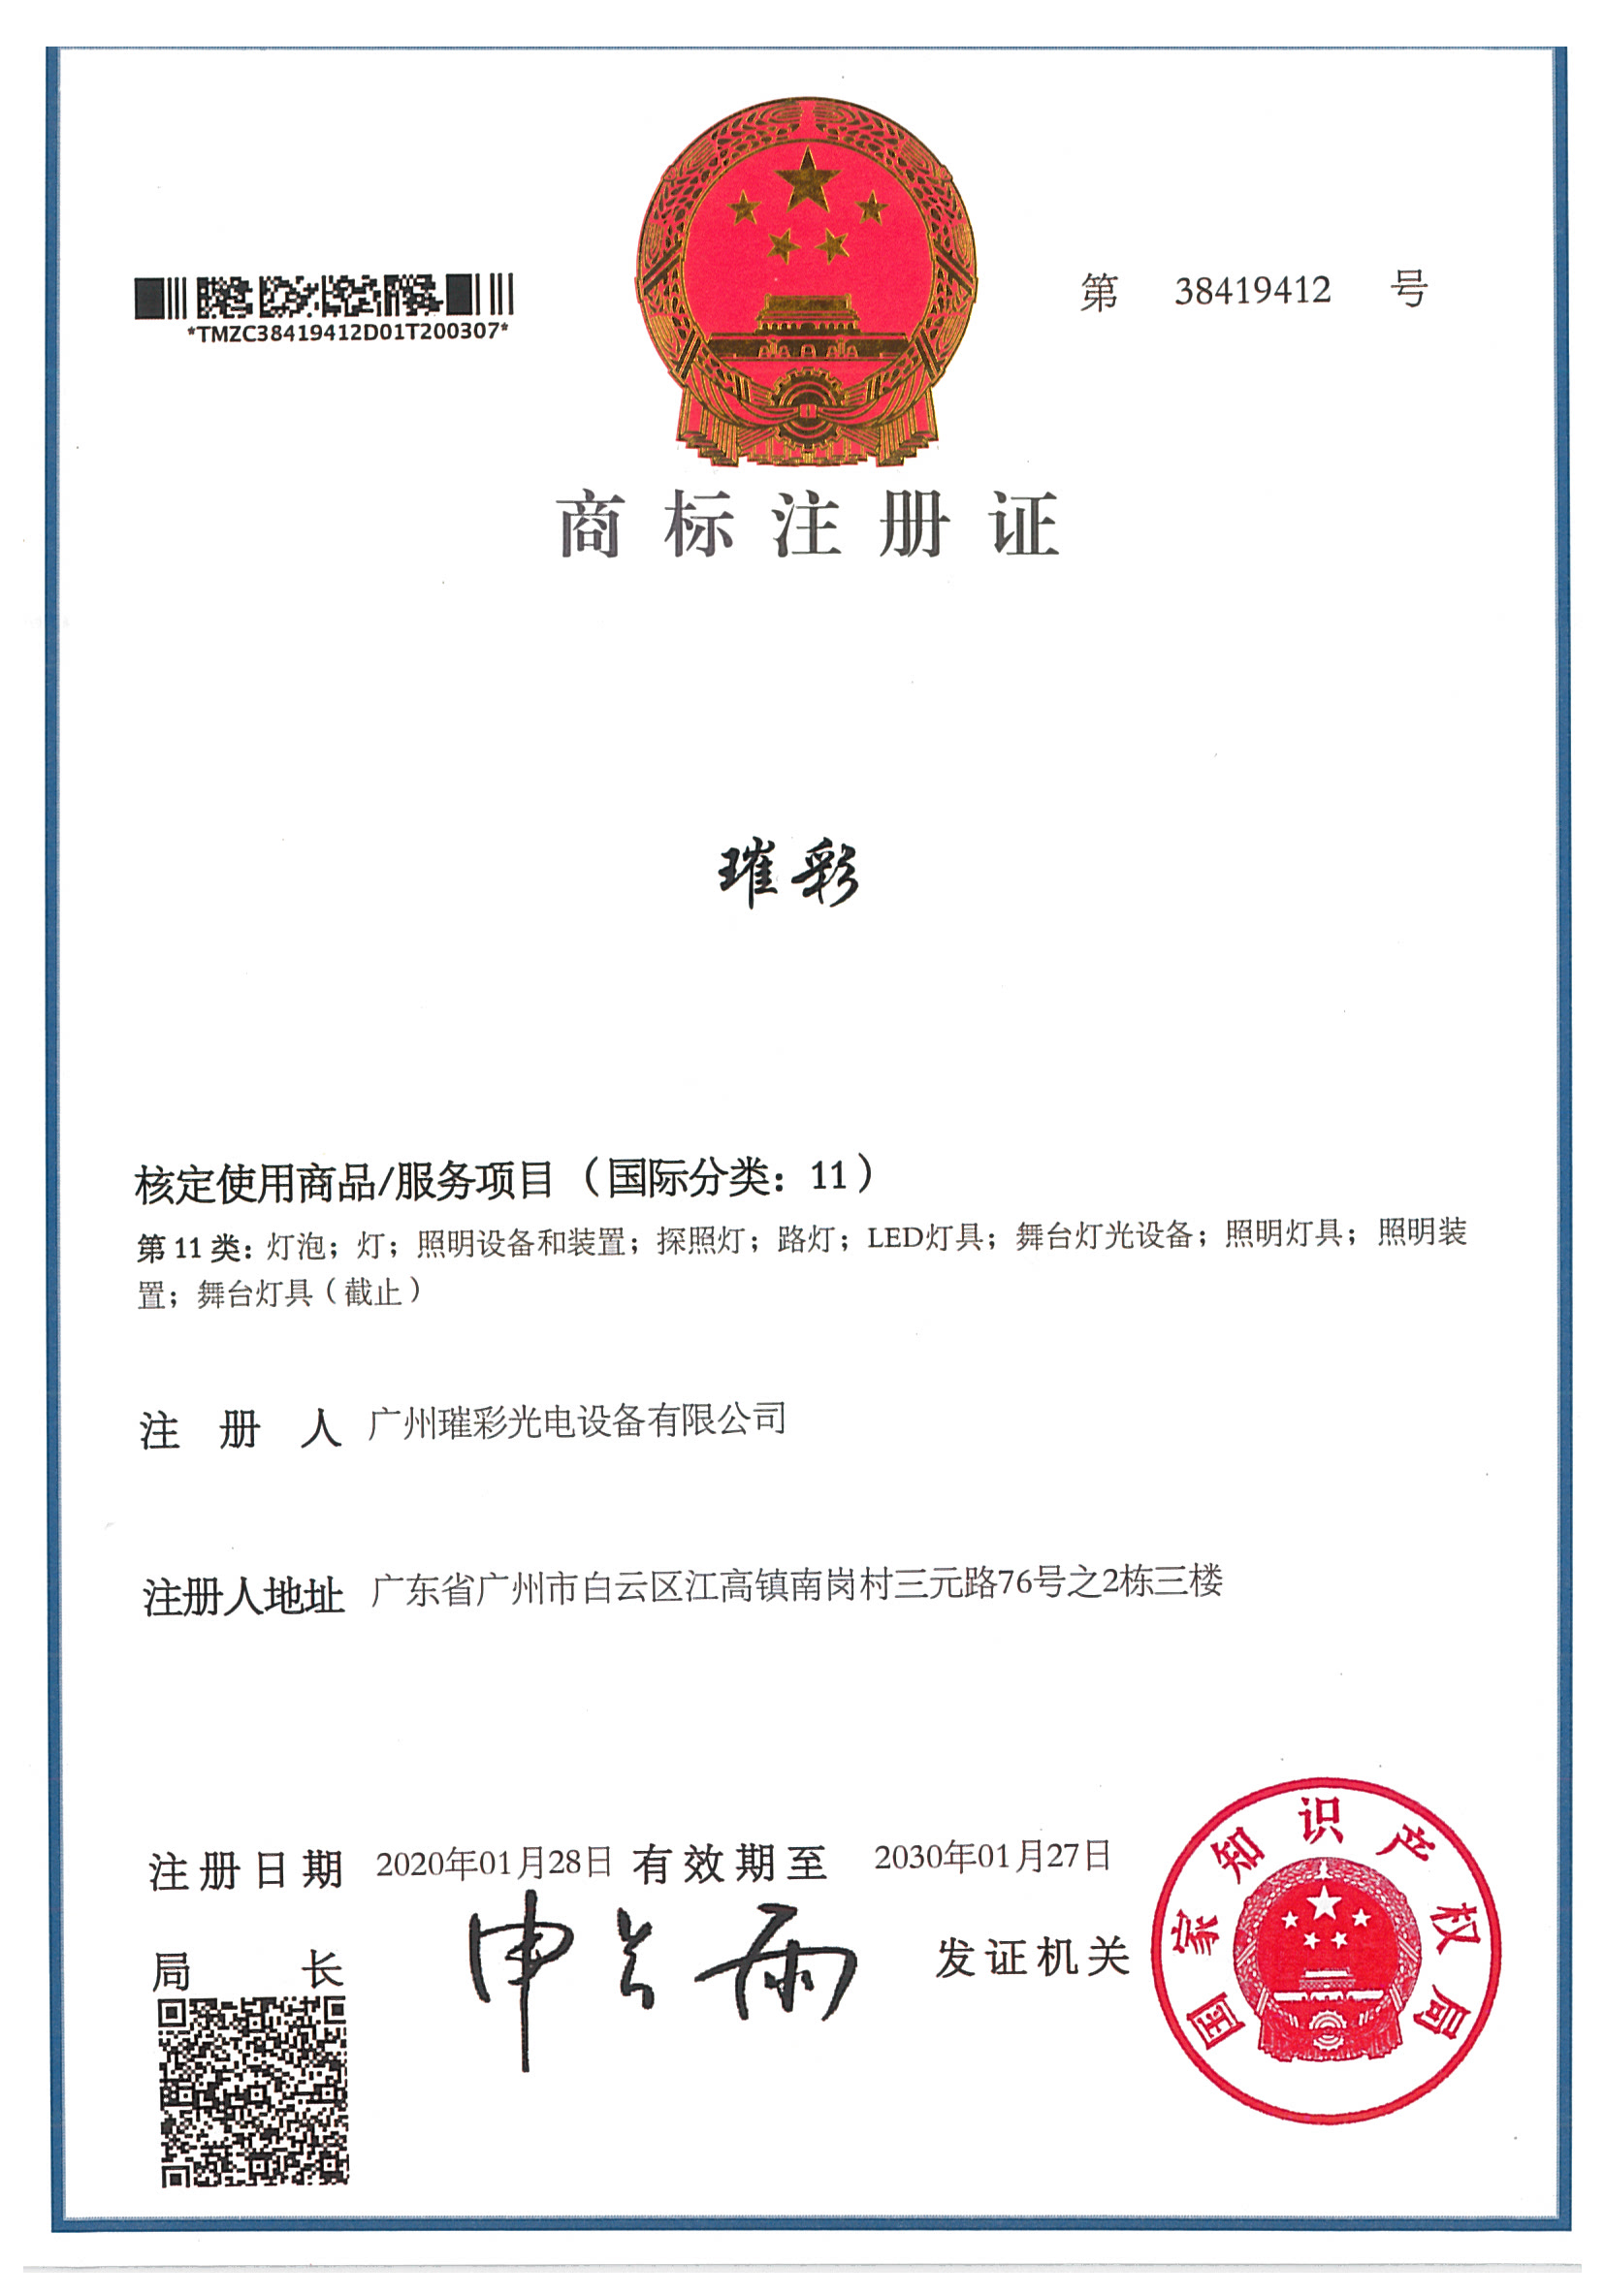 公司中文商标证书